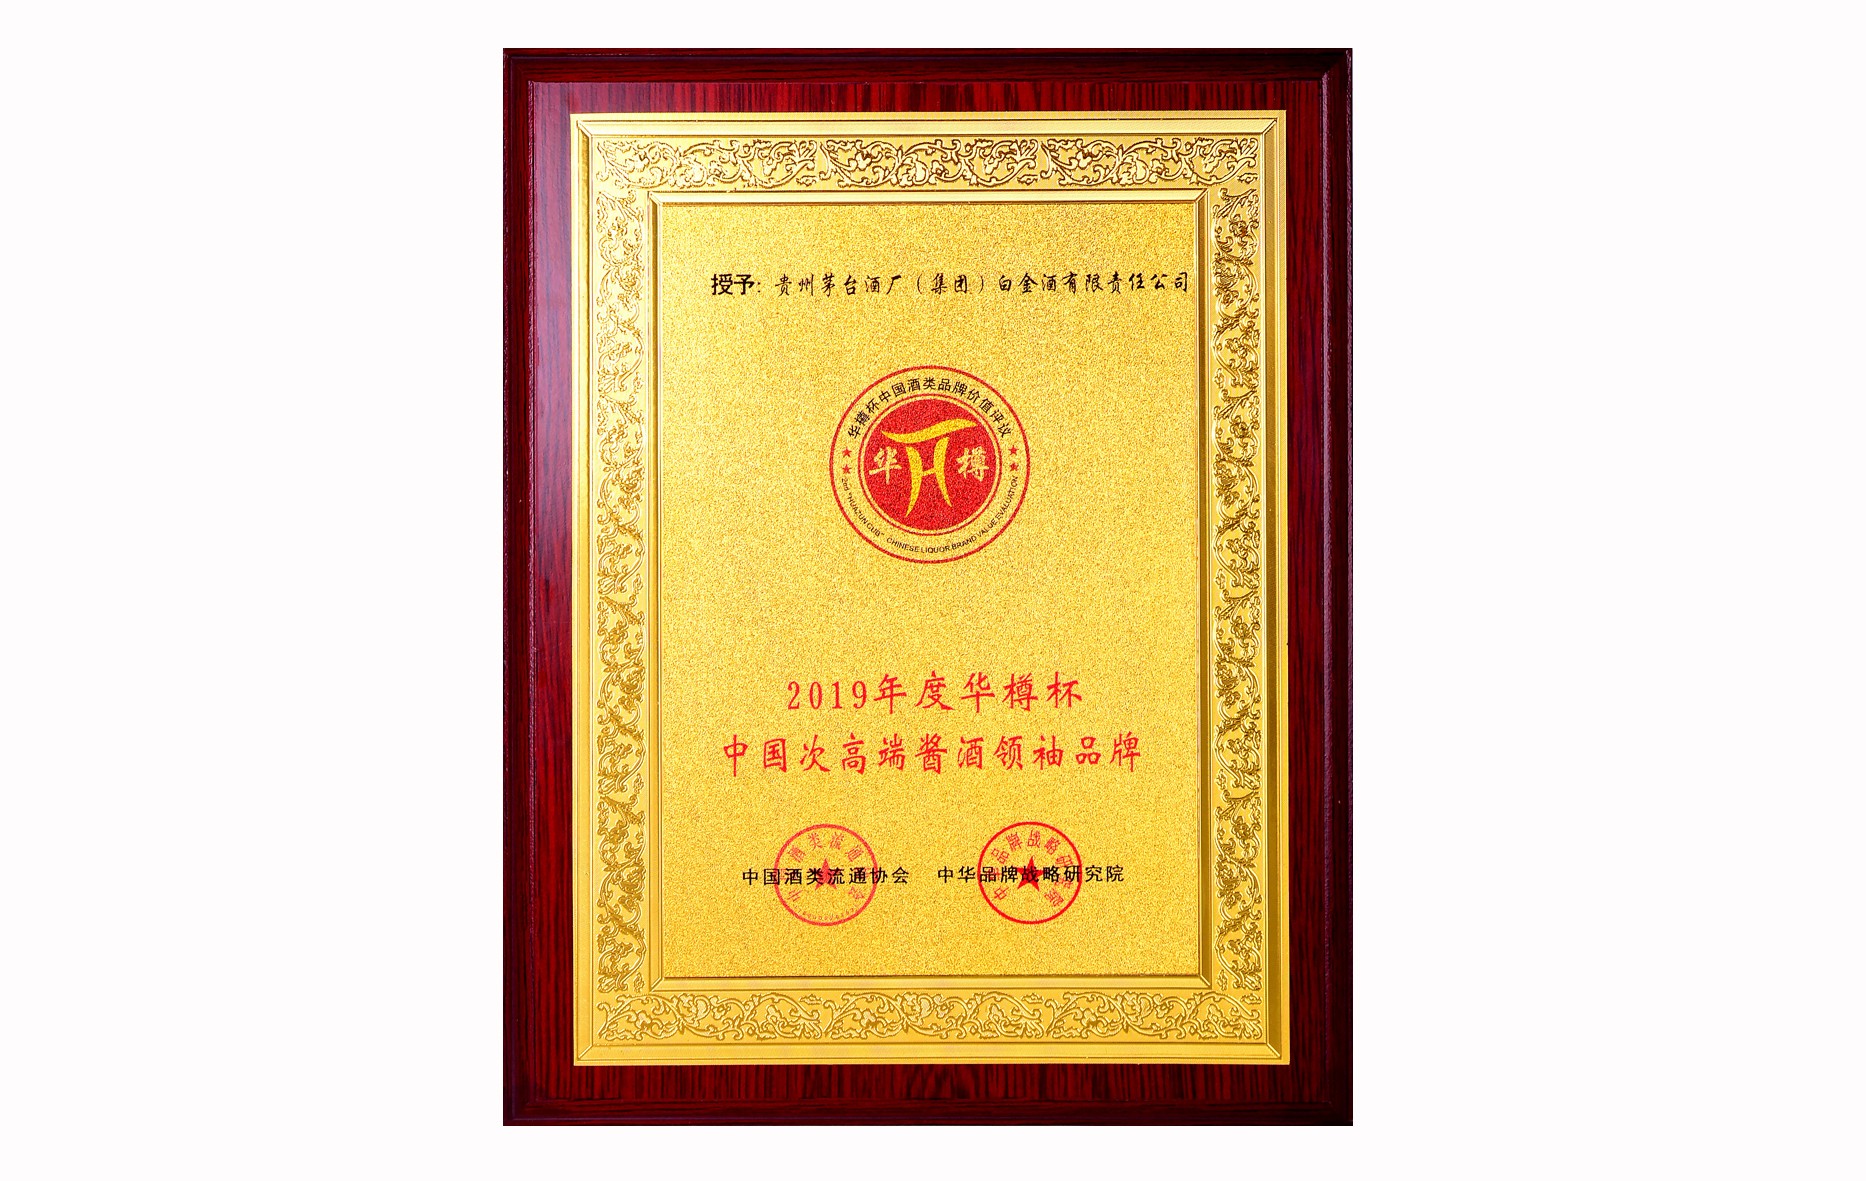 2019年度華樽杯中國次高端醬酒領袖品牌